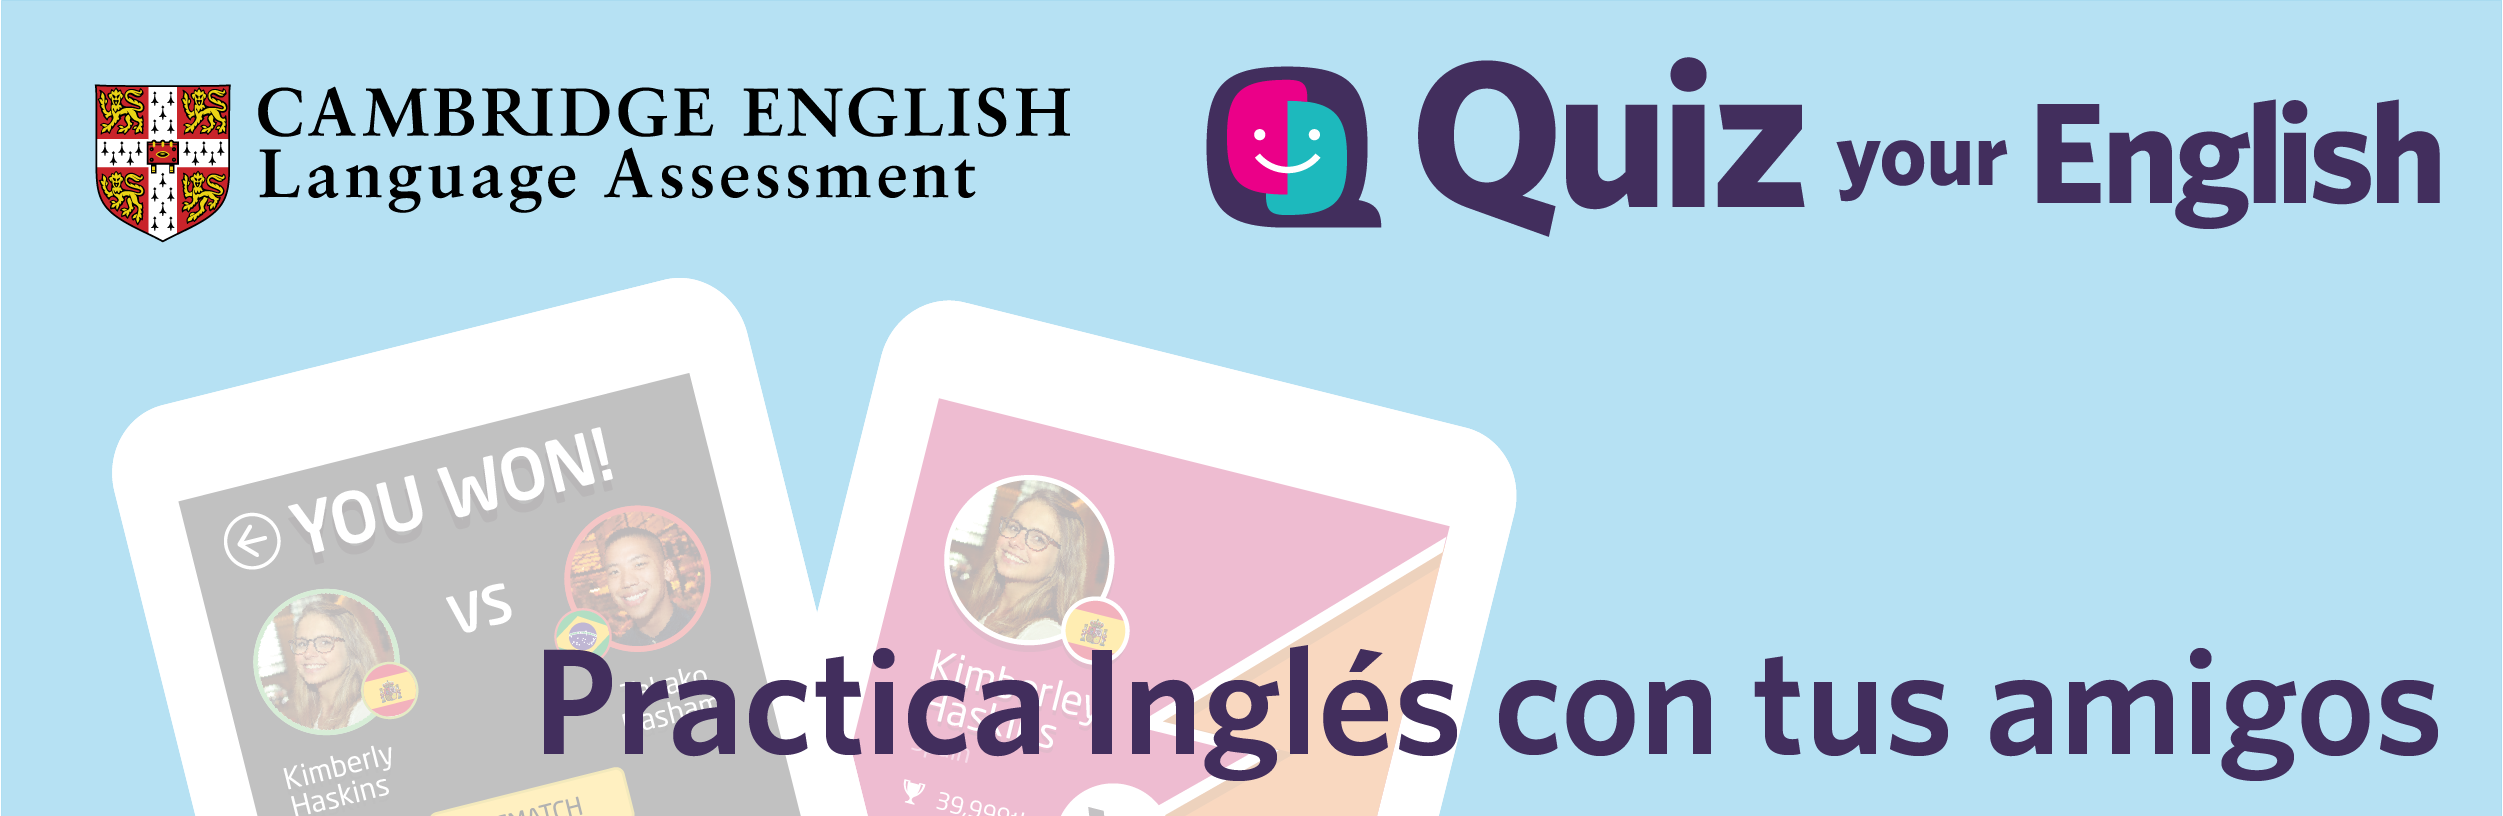 Quiz your English app